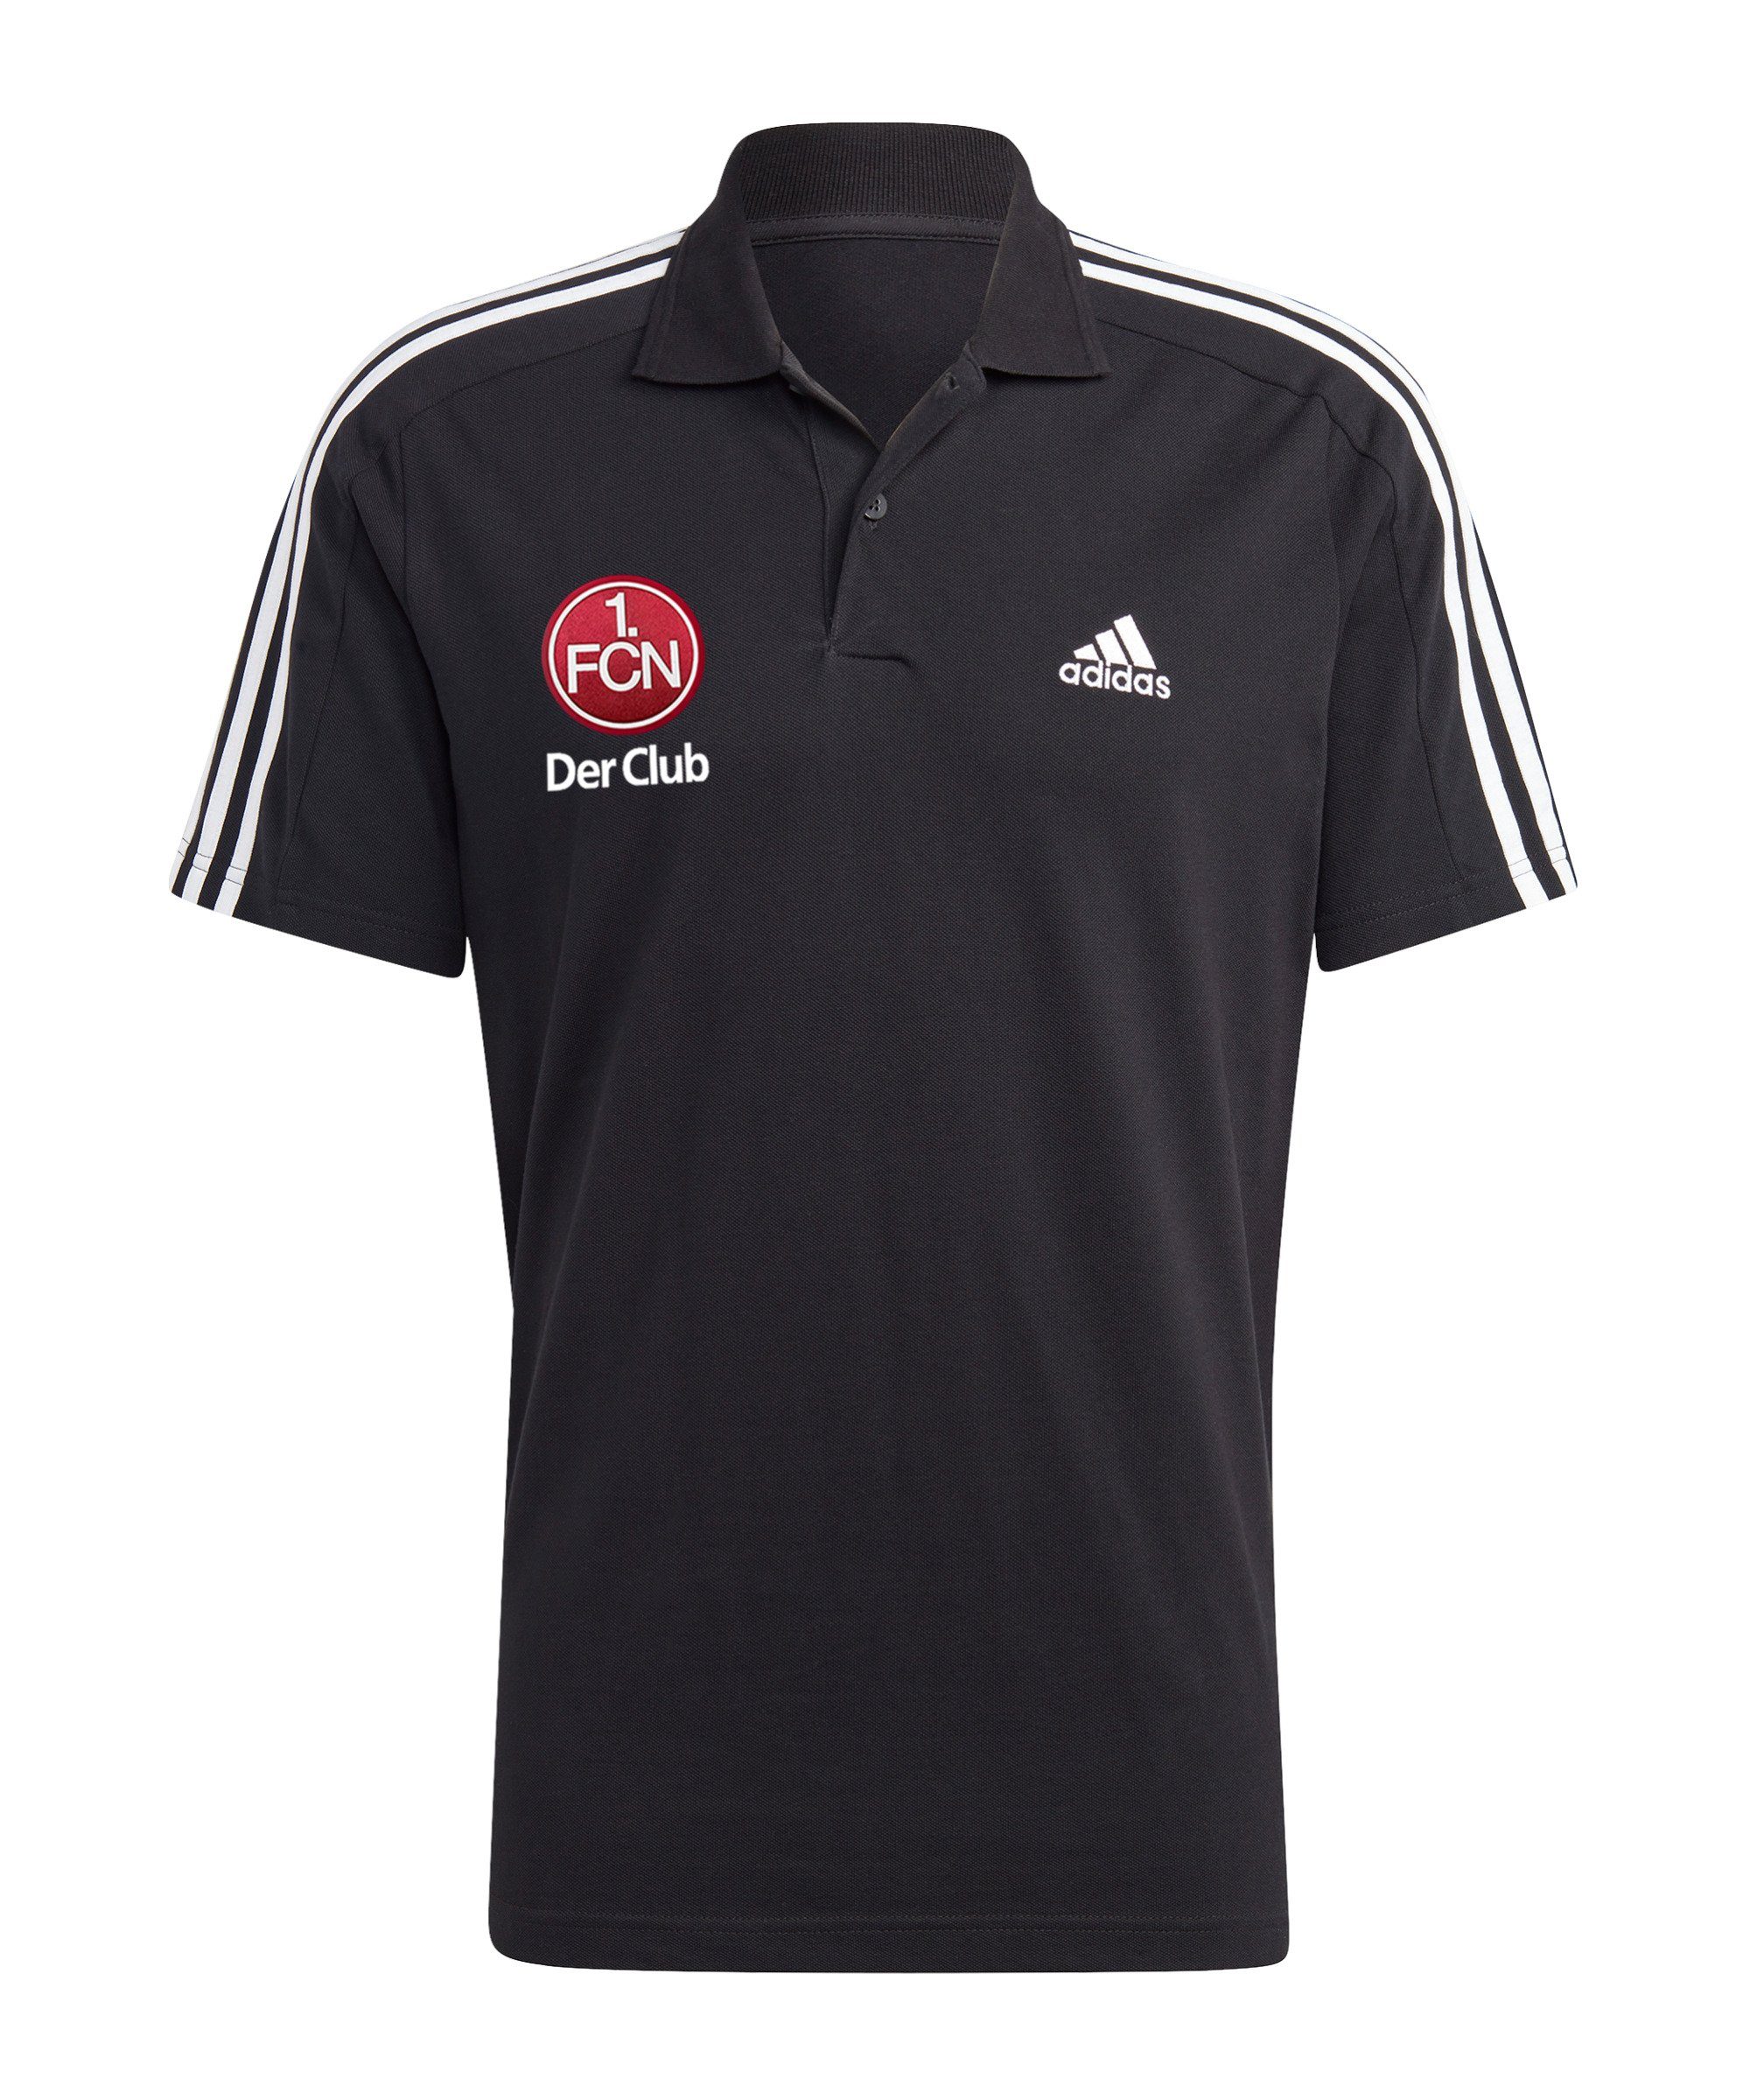 adidas Performance T-Shirt 1. FC Nürnberg Poloshirt default